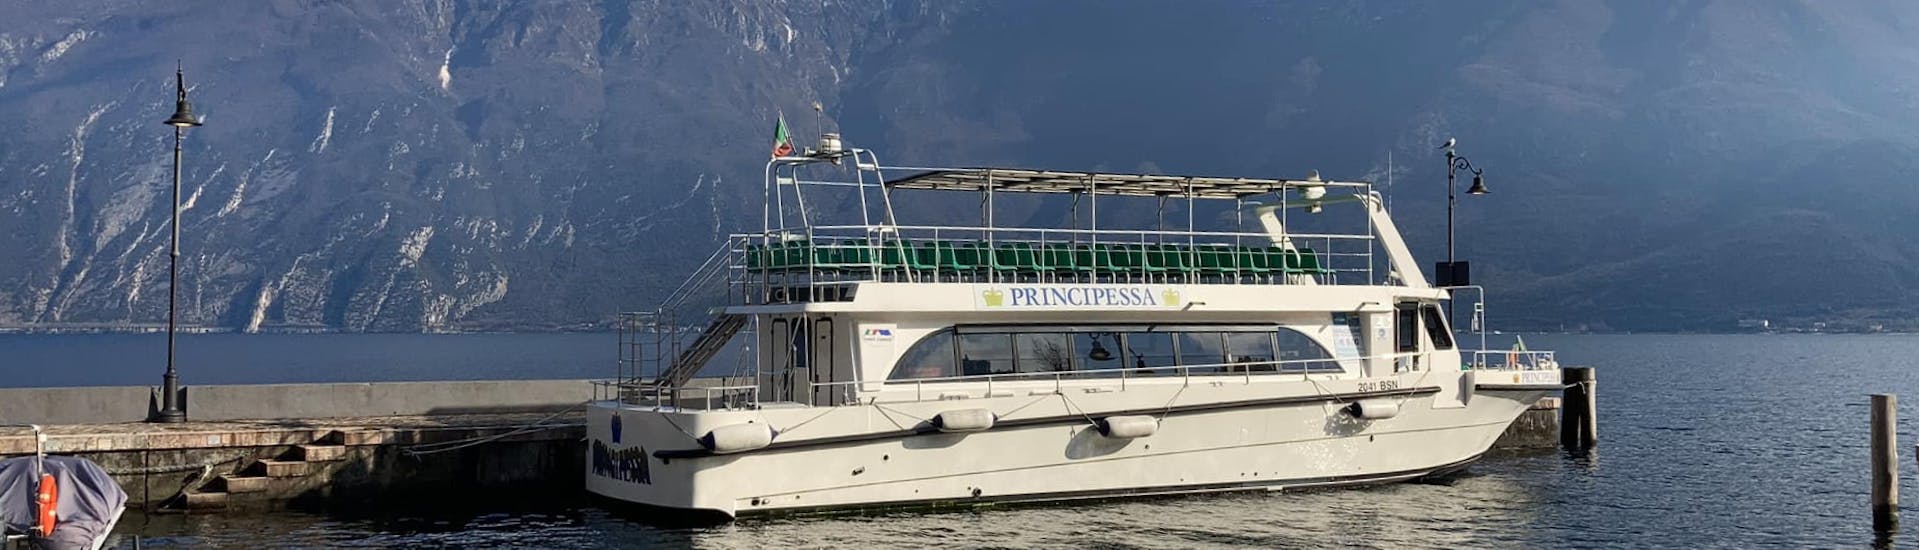 Sicht auf das Boot von Garda Escursioni, mit dem die Abendlichen Bootsfahrt auf dem Gardasee von Malcesine nach Limone durchgeführt wird.